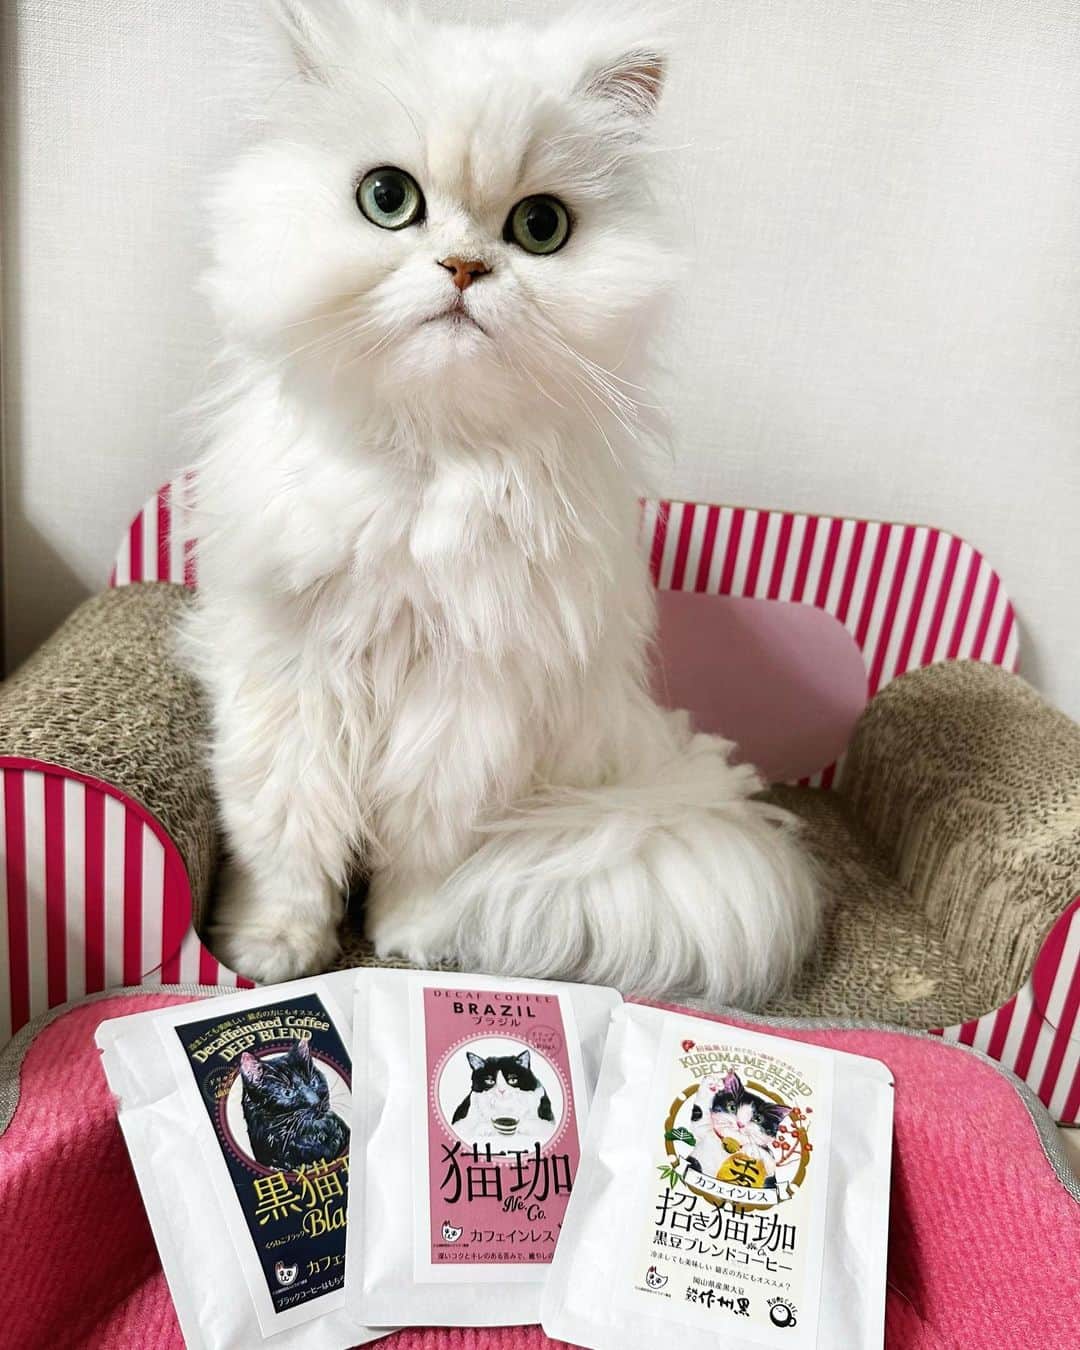 manami☺︎satoのインスタグラム：「⑅⃛  \\ かわいい！🐈🐈‍⬛☕️ //  佐賀県にある雑貨店コトイロさんの猫パケコーヒー🤎  《𓏲𓎨全部で7つの味𓂃 𓈒𓏸》  ピンクのはちわれ▸▸▸ブラジル イエローのみけ▸▸▸コロンビア グリーンのとら▸▸▸モカ ブラックのくろ▸▸▸ディープブレンド ベージュの3匹▸▸▸やわらかなブレンド 赤のとら▸▸▸赤米ブレンド 白のはちわれ▸▸▸黒豆ブレンド  ドリップ式なので香りもコクも👌🏻 ̖́-‬ カフェインレスなので時間を気にせず飲めます◎  可愛くて美味しいので、猫好きな方や猫友さんへの プチギフトにもおすすめ🐾  他にも可愛い猫グッズがたくさんなので、オンライン ショップをチェックしてみてにゃ^ↀᴥↀ^🪄  猫加（ねこ）シリーズの商品の売り上げの一部は、 公益財団法人どうぶつ基金に寄付され、TNR活動の 一助となるそうです😊🙏  PR ▸▸▸ @_cotoiro.saga  #猫雑貨コトイロ #猫雑貨 #ドリップコーヒーパック #ワンドリップコーヒー #コトイロ」